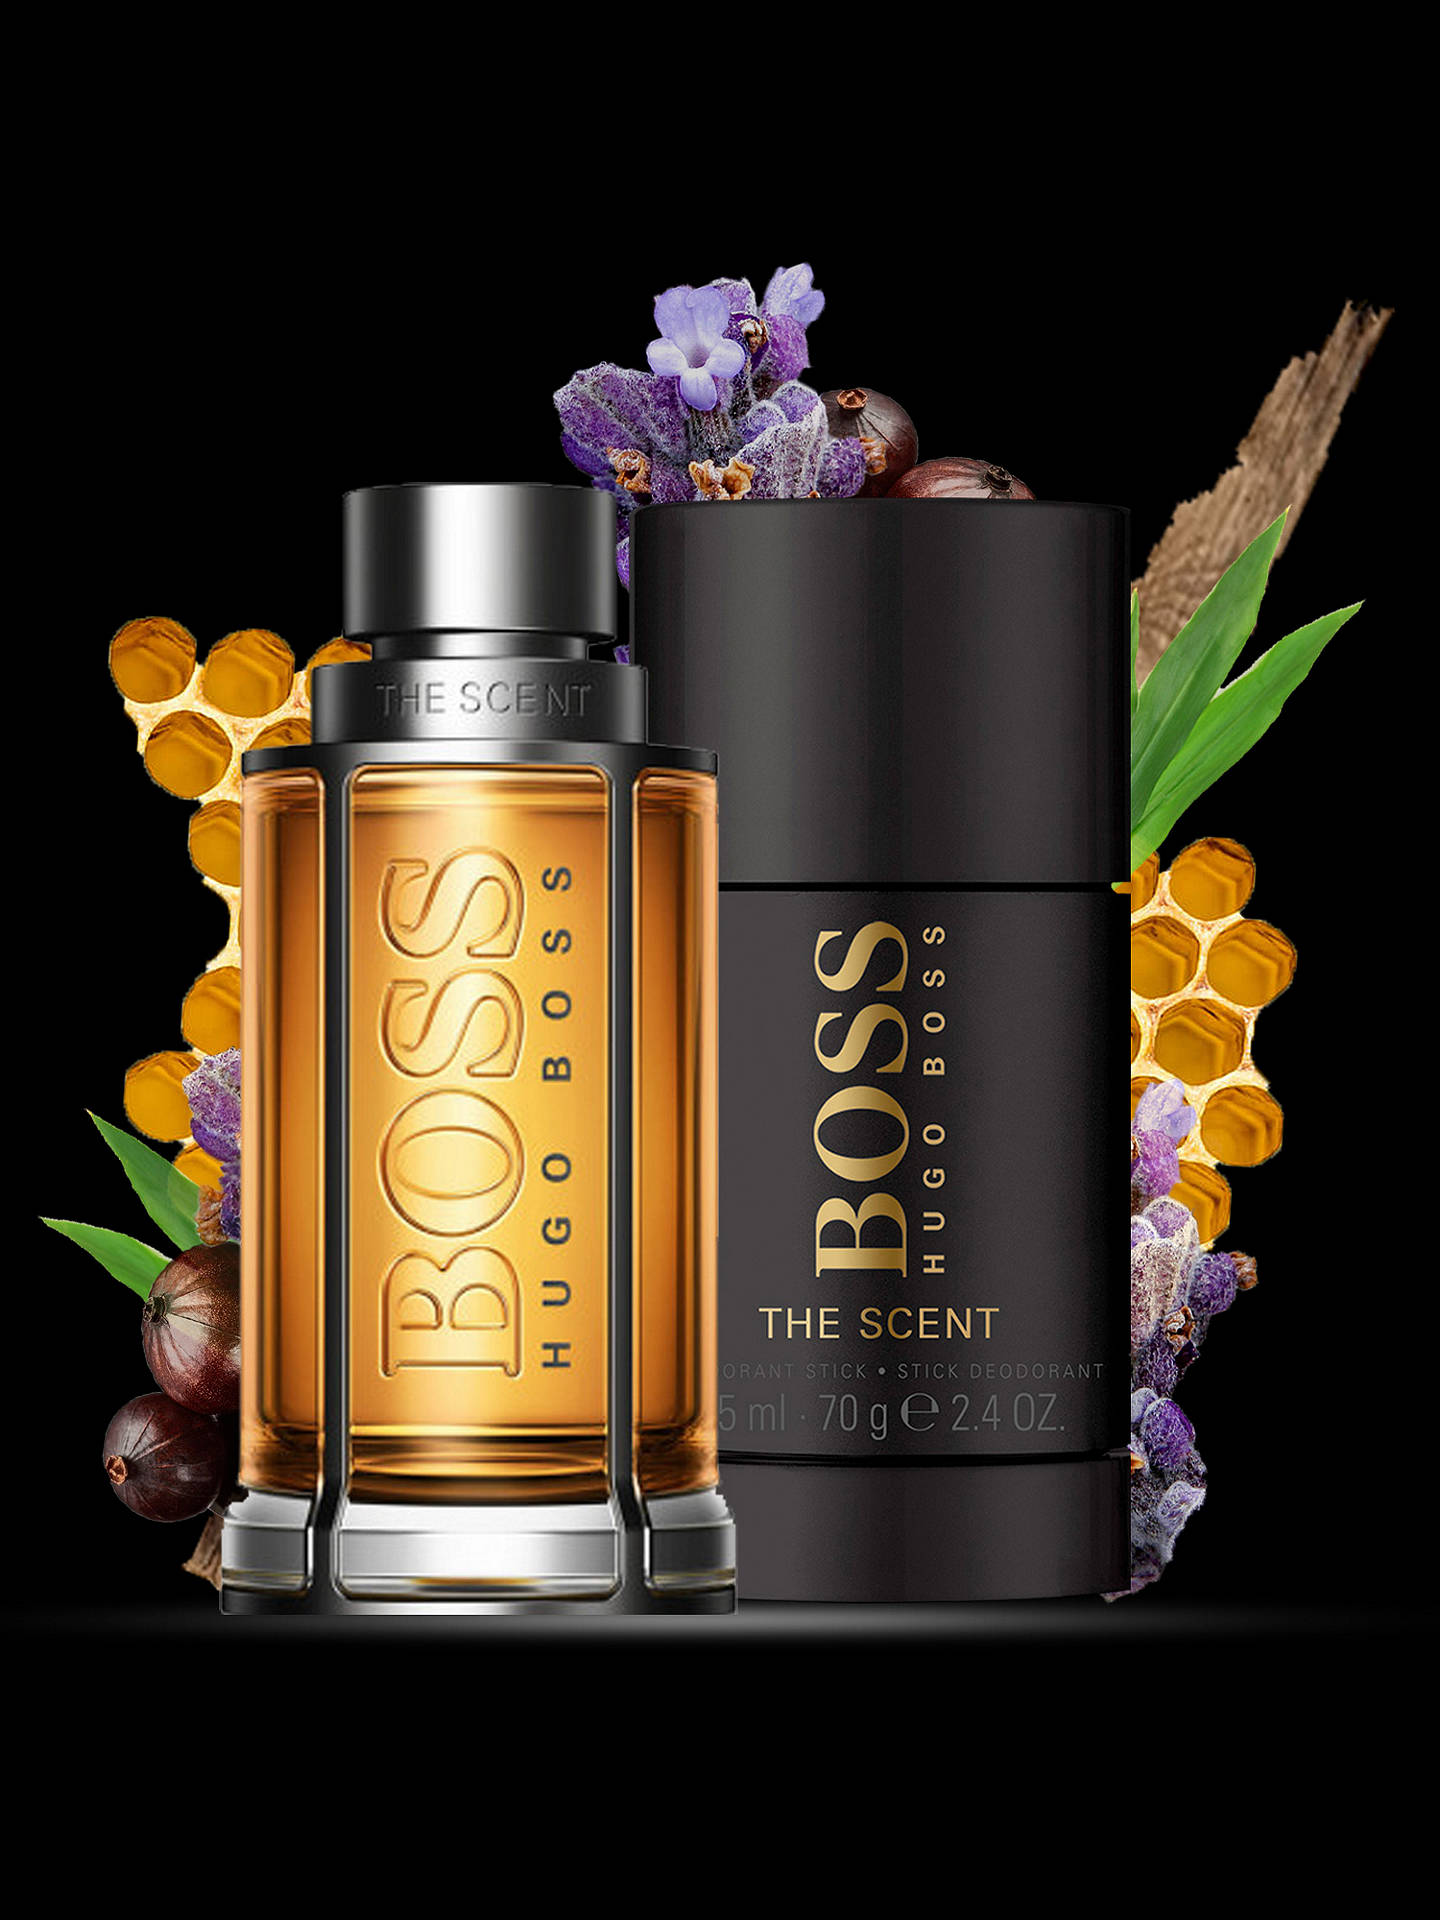 HUGO BOSS BOSS The Scent For Him 50ml Eau de Toilette Fragrance Gift ...